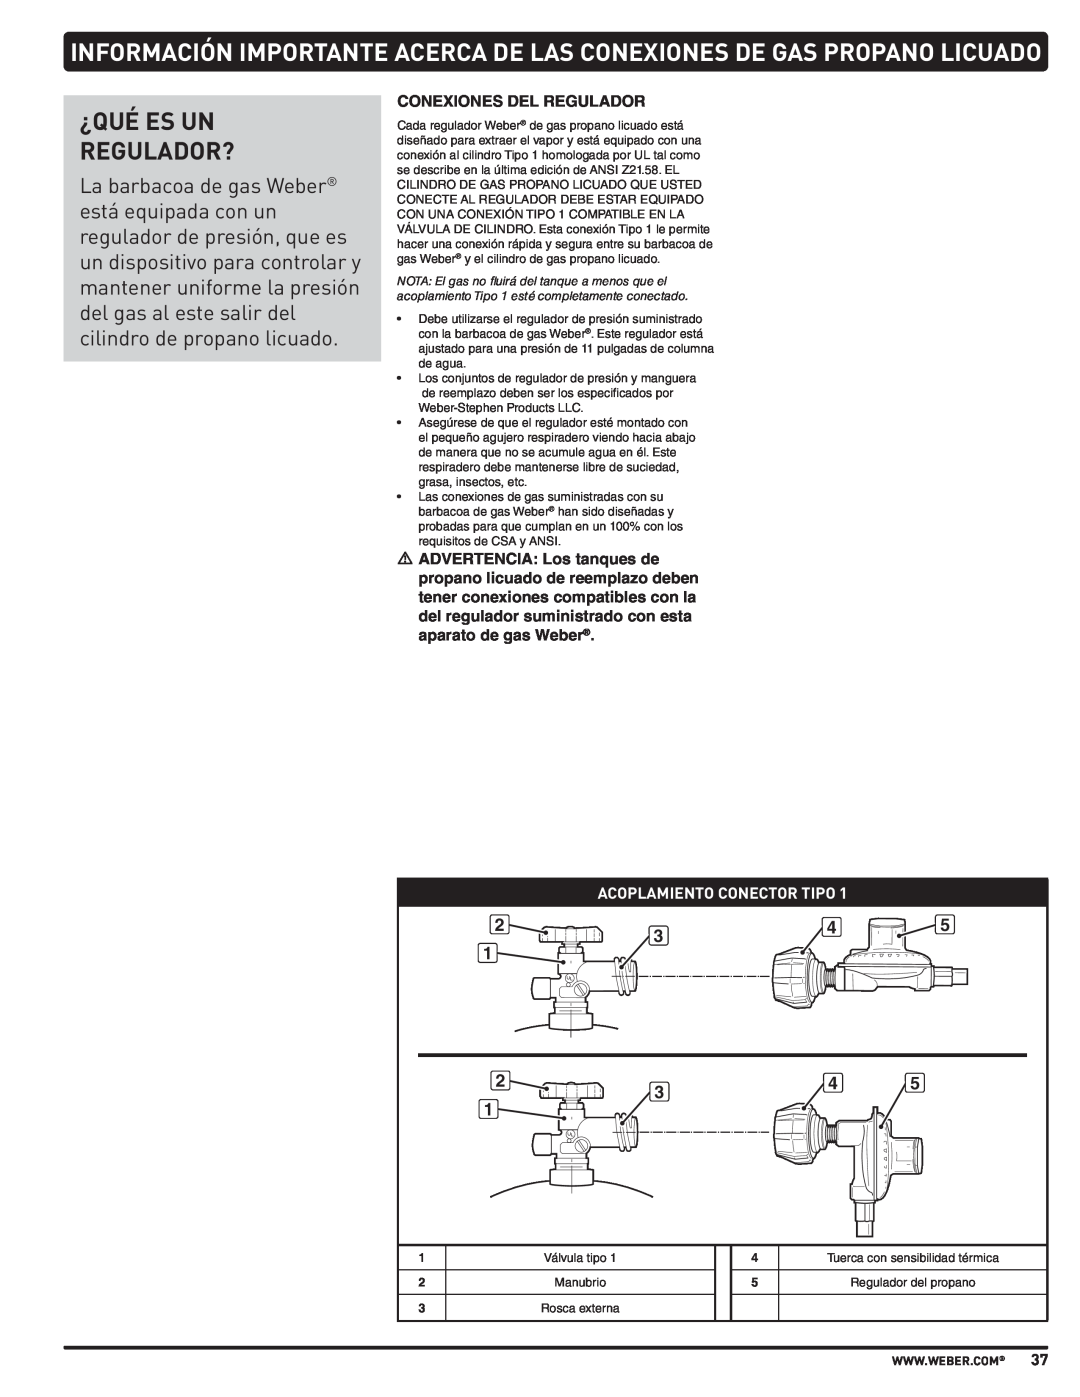 Weber PL - PG. 59 57205 manual ¿Qué Es Un Regulador?, Acoplamiento Conector Tipo, Tuerca con sensibilidad térmica, Manubrio 